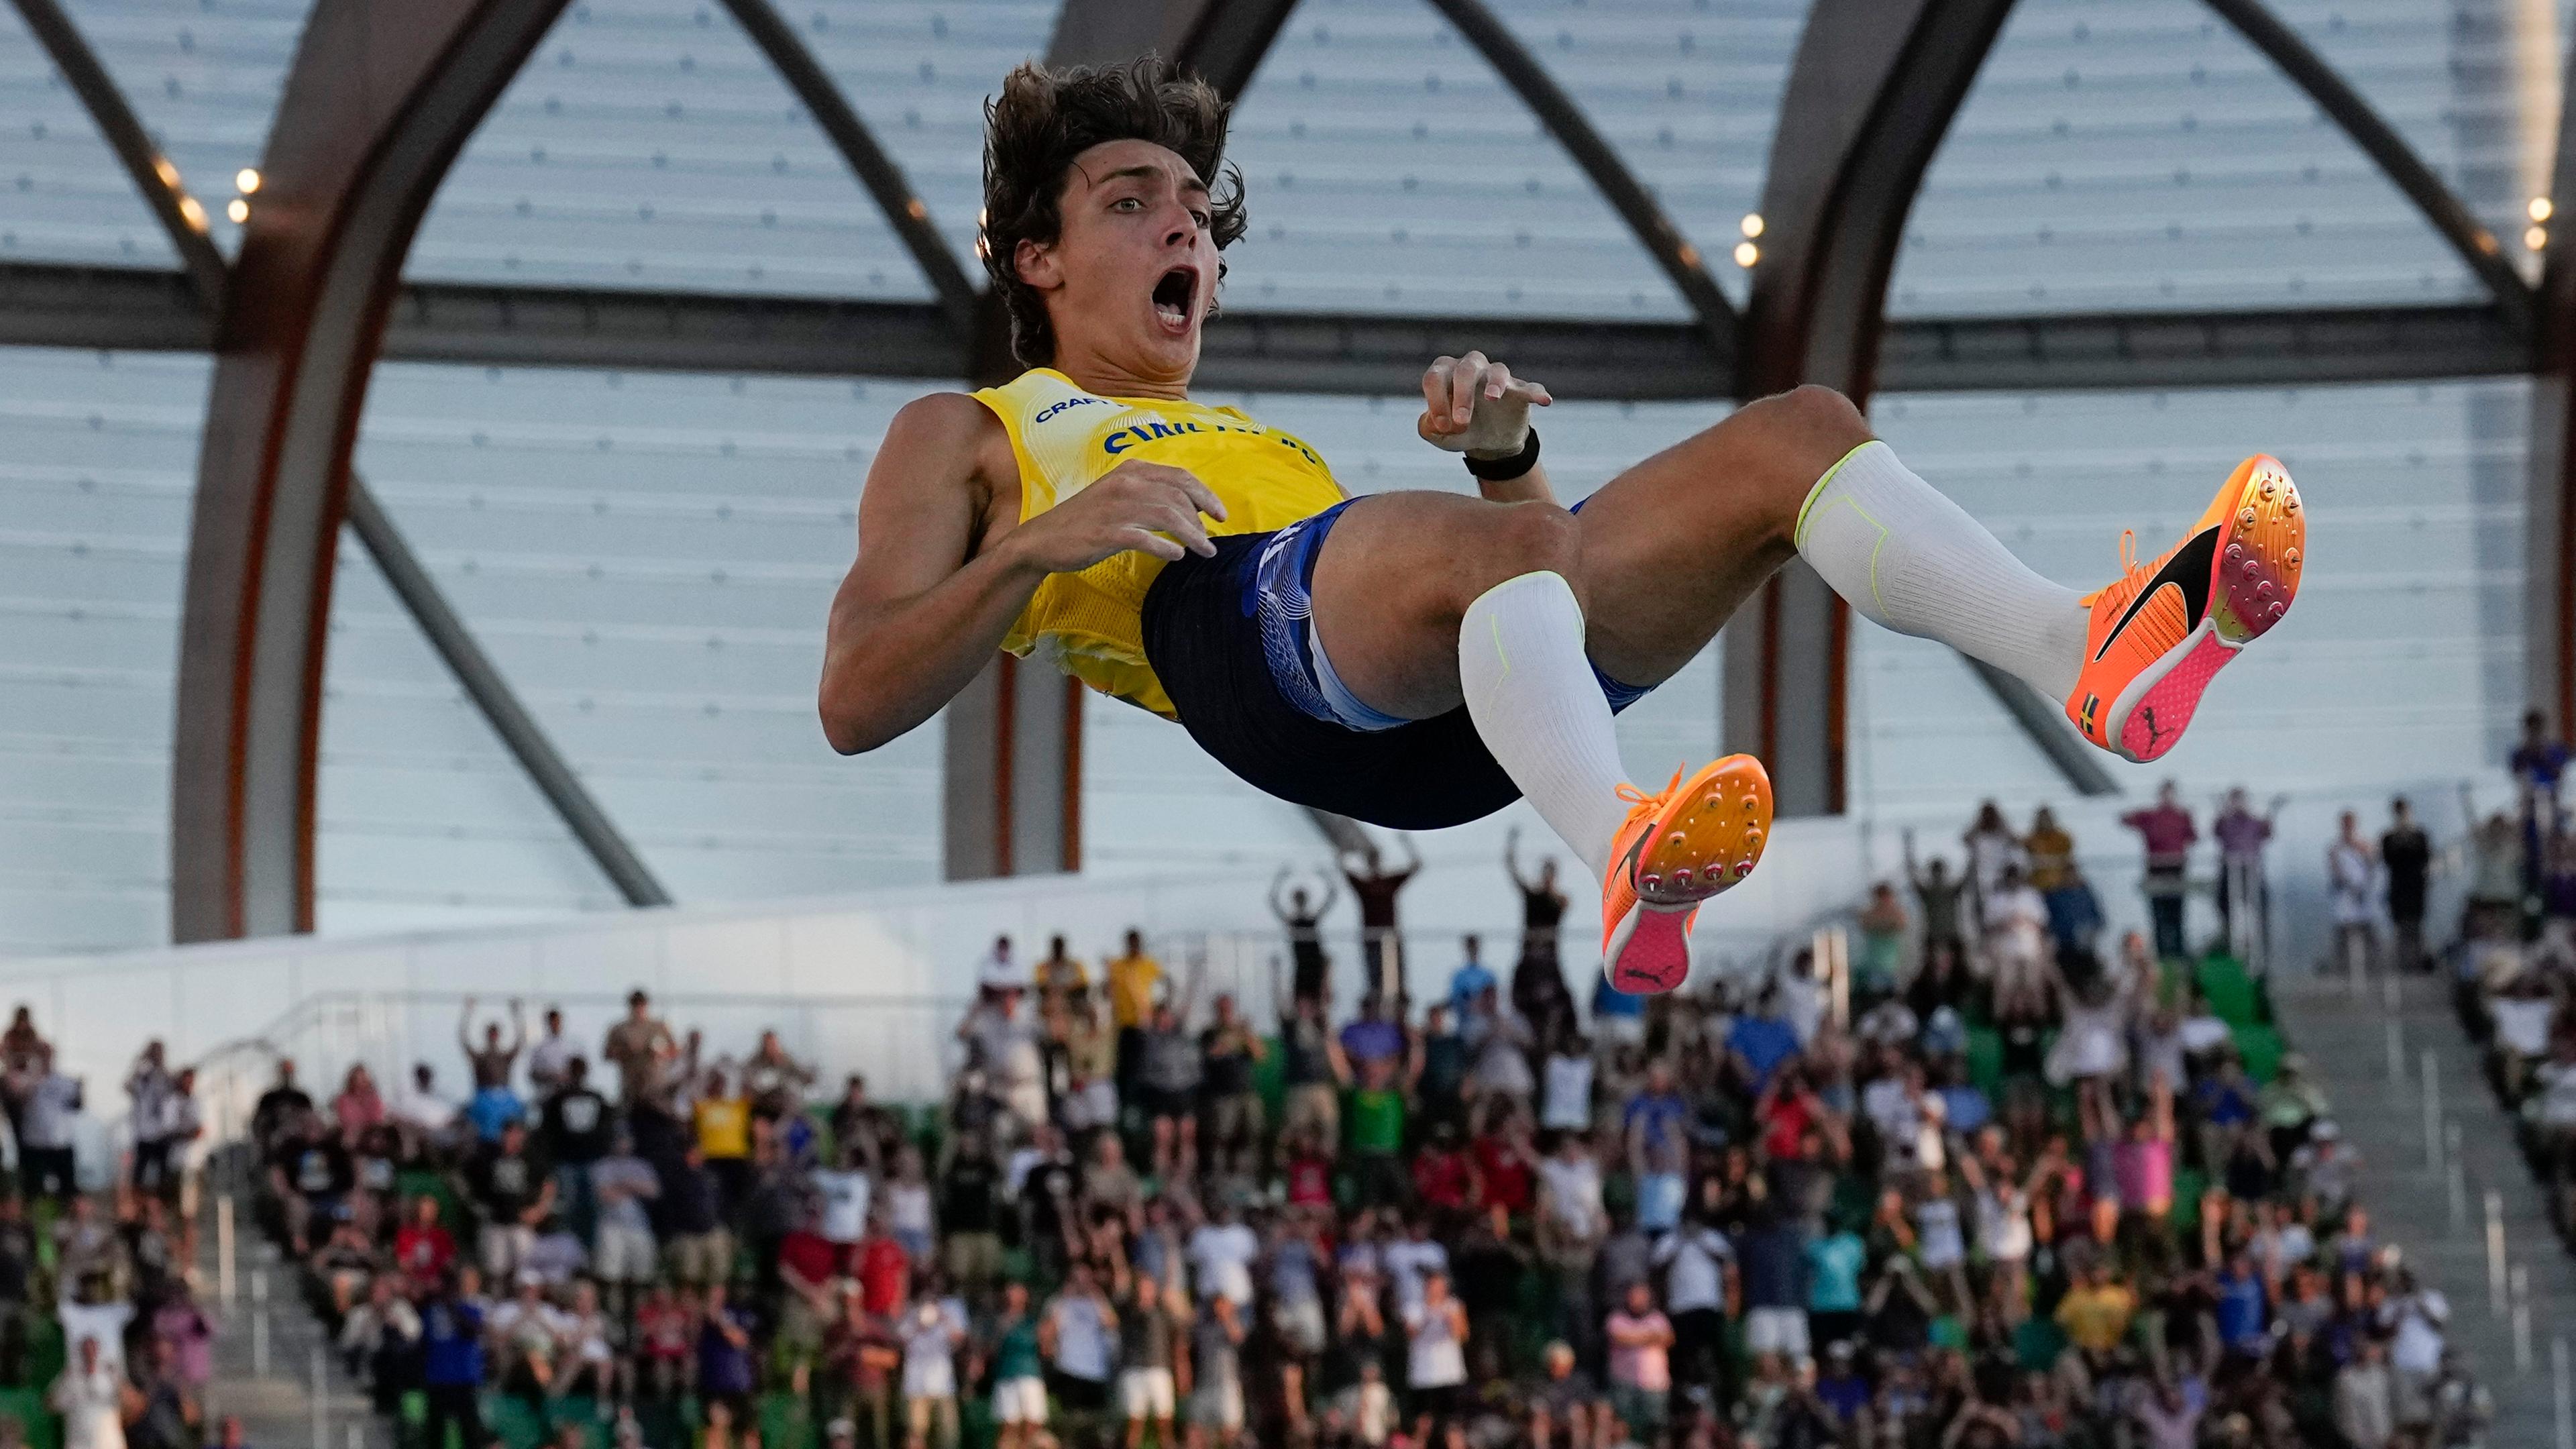 Stabhochspringer Armand Duplantis fällt bei der WM 2022 nach seinem Sprung über die Weltrekordhöhe von 6,21 Meter auf die Matte.